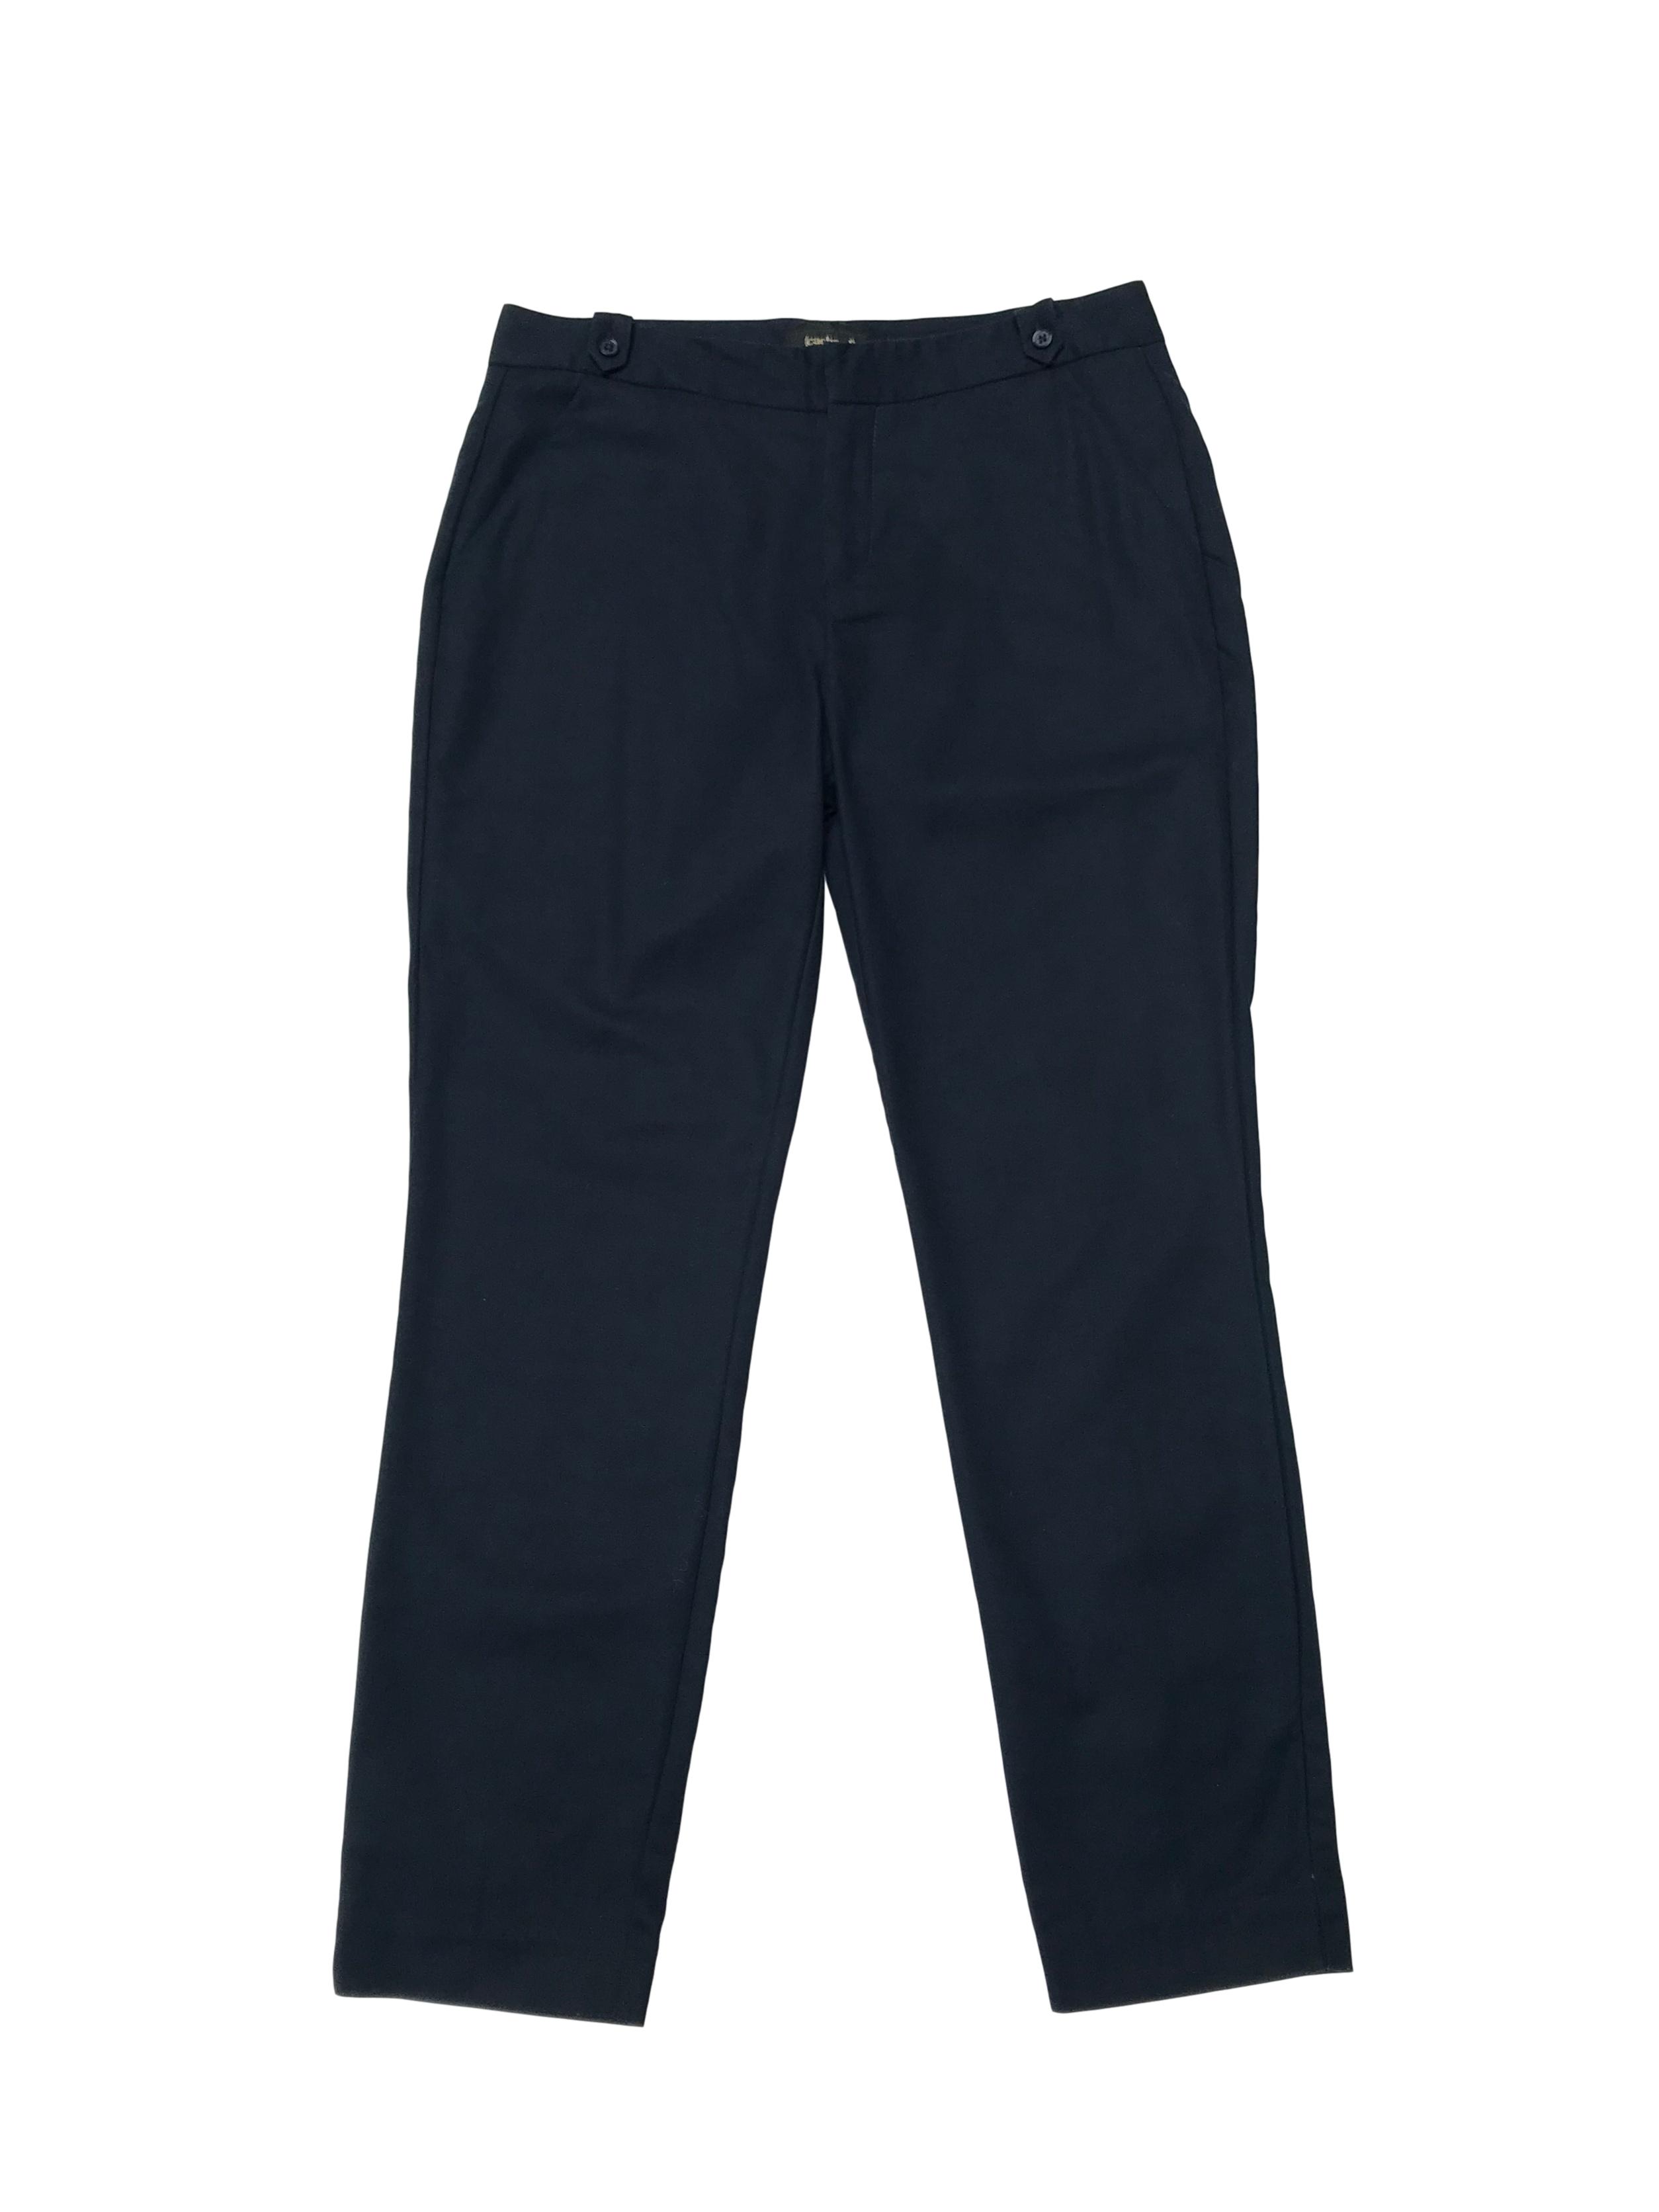 Pantalón Cacharel azul 97% algodón, con bolsillos laterales y detalles en la pretina. Cintura 78cm Cadera 102cm